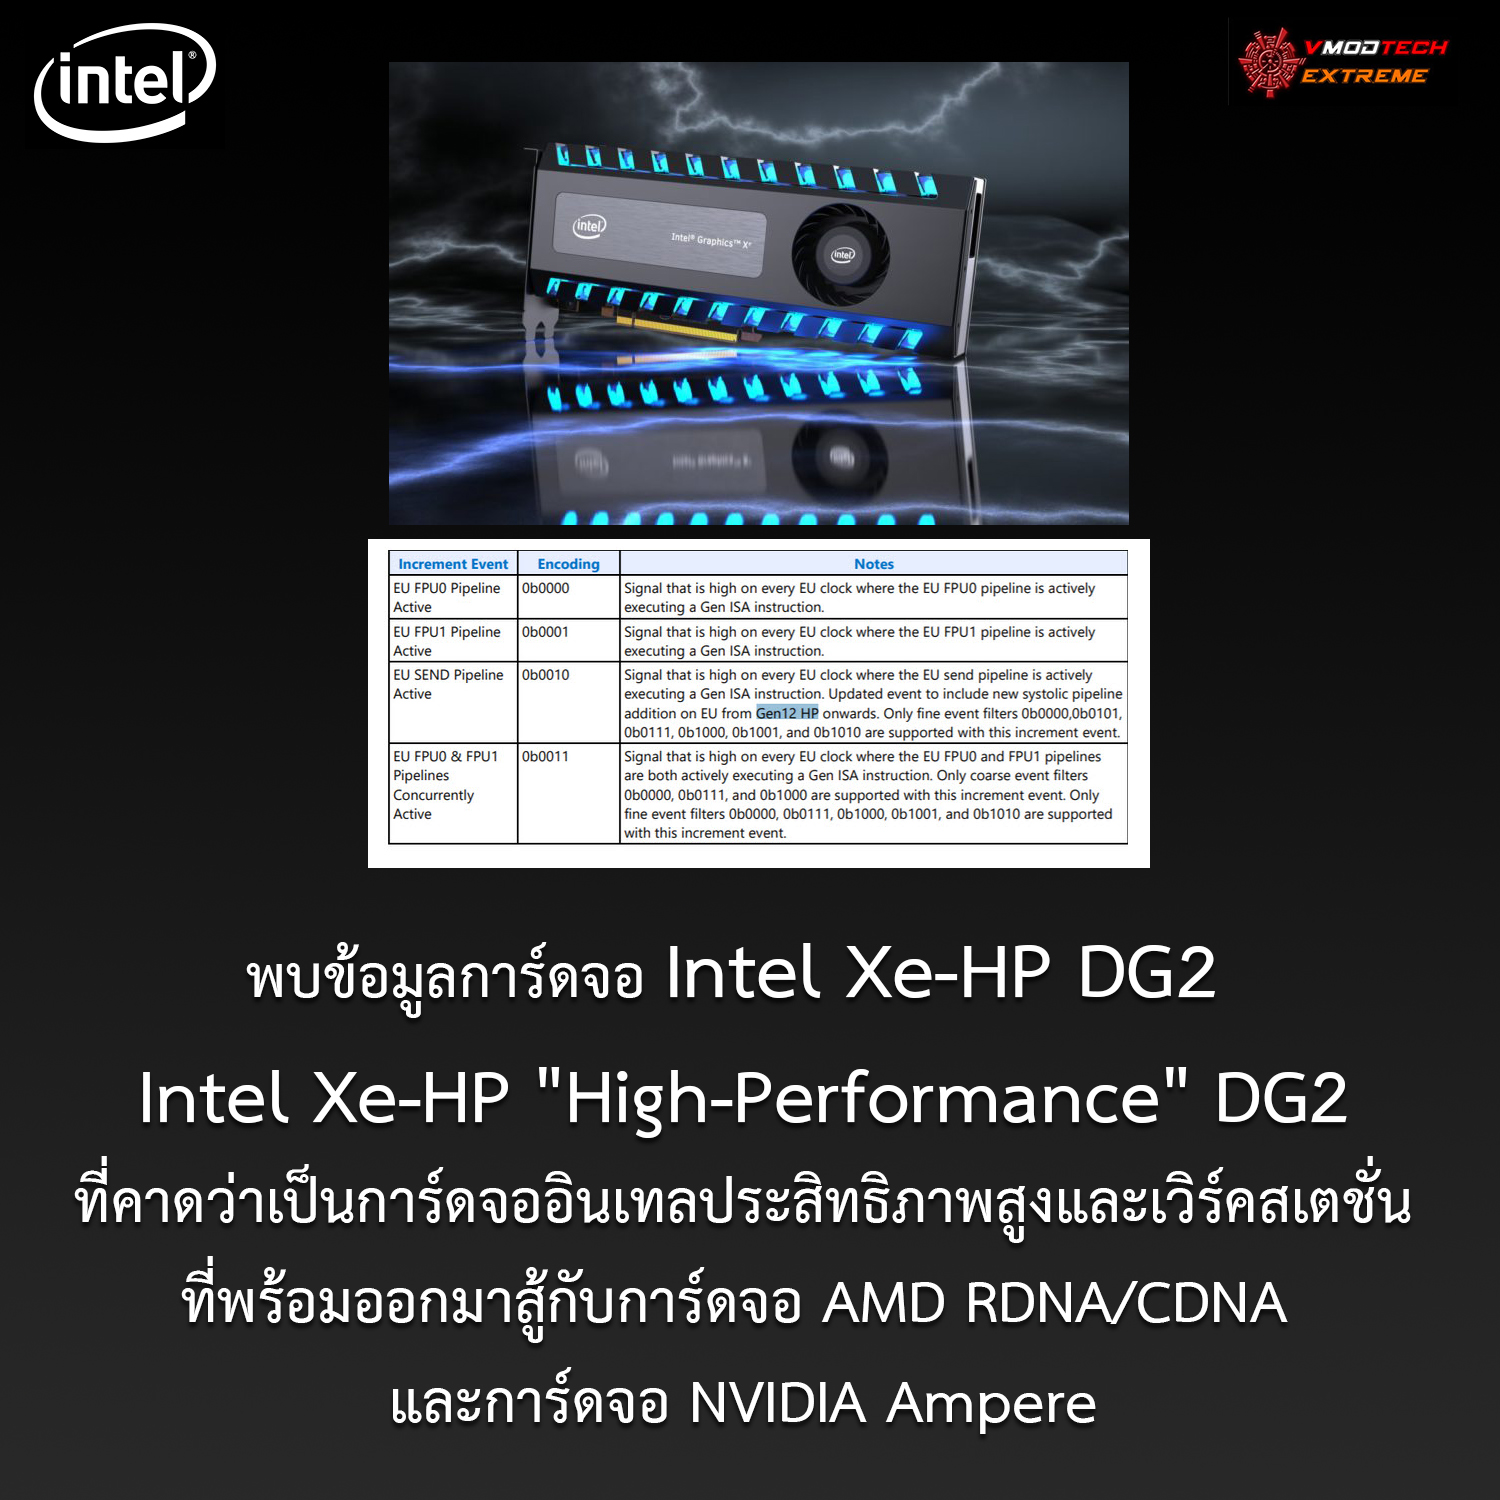 พบข้อมูลการ์ดจอ Intel Xe-HP DG2 ที่คาดว่าเป็นการ์ดจออินเทลประสิทธิภาพสูงและเวิร์คสเตชั่นที่พร้อมออกมาสู้กับการ์ดจอ AMD RDNA/CDNA และการ์ดจอ NVIDIA Ampere